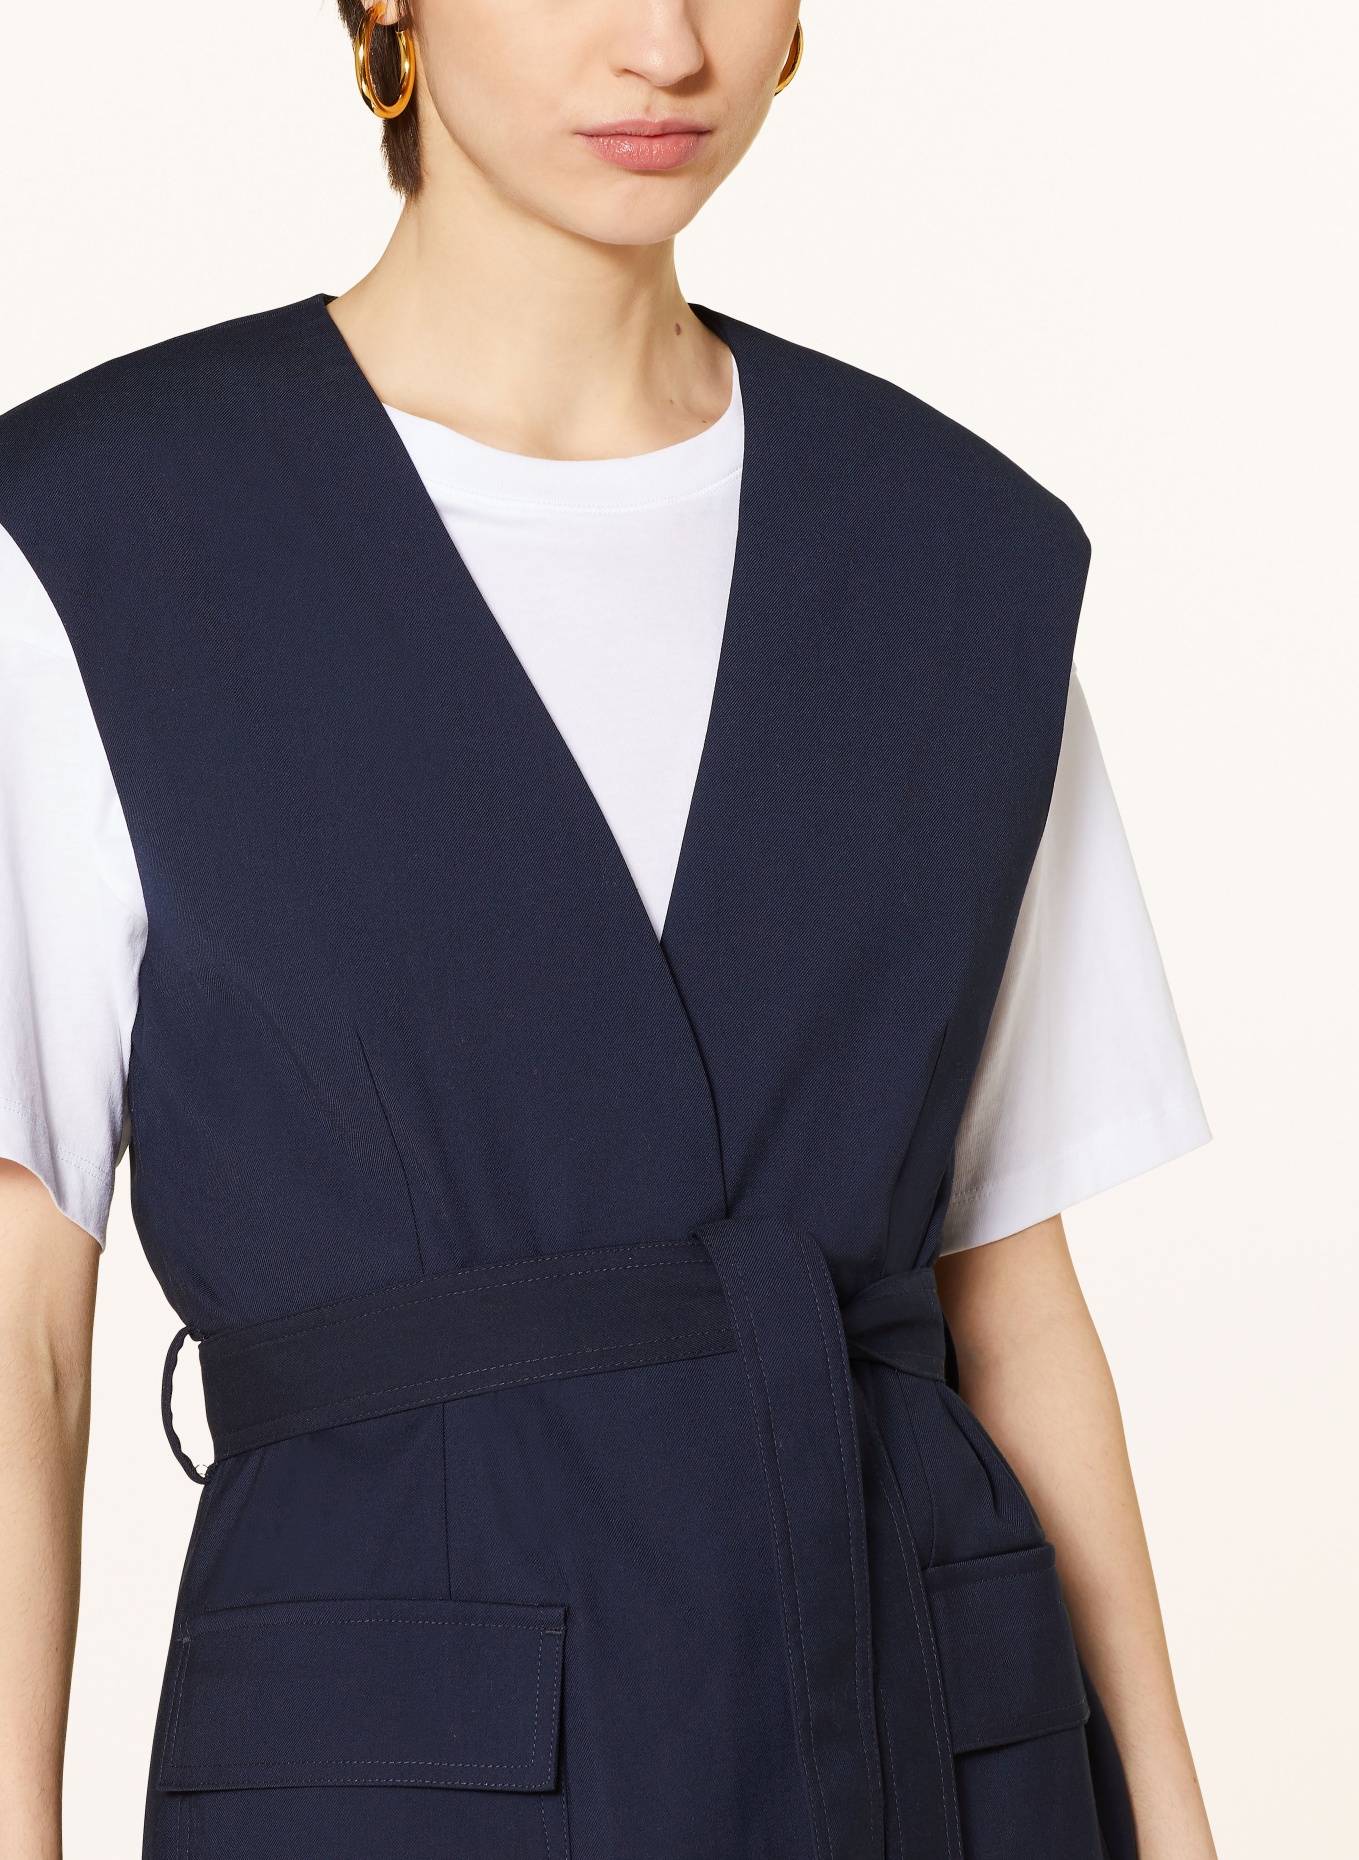 ROUGE VILA Blazer vest, Color: DARK BLUE (Image 4)